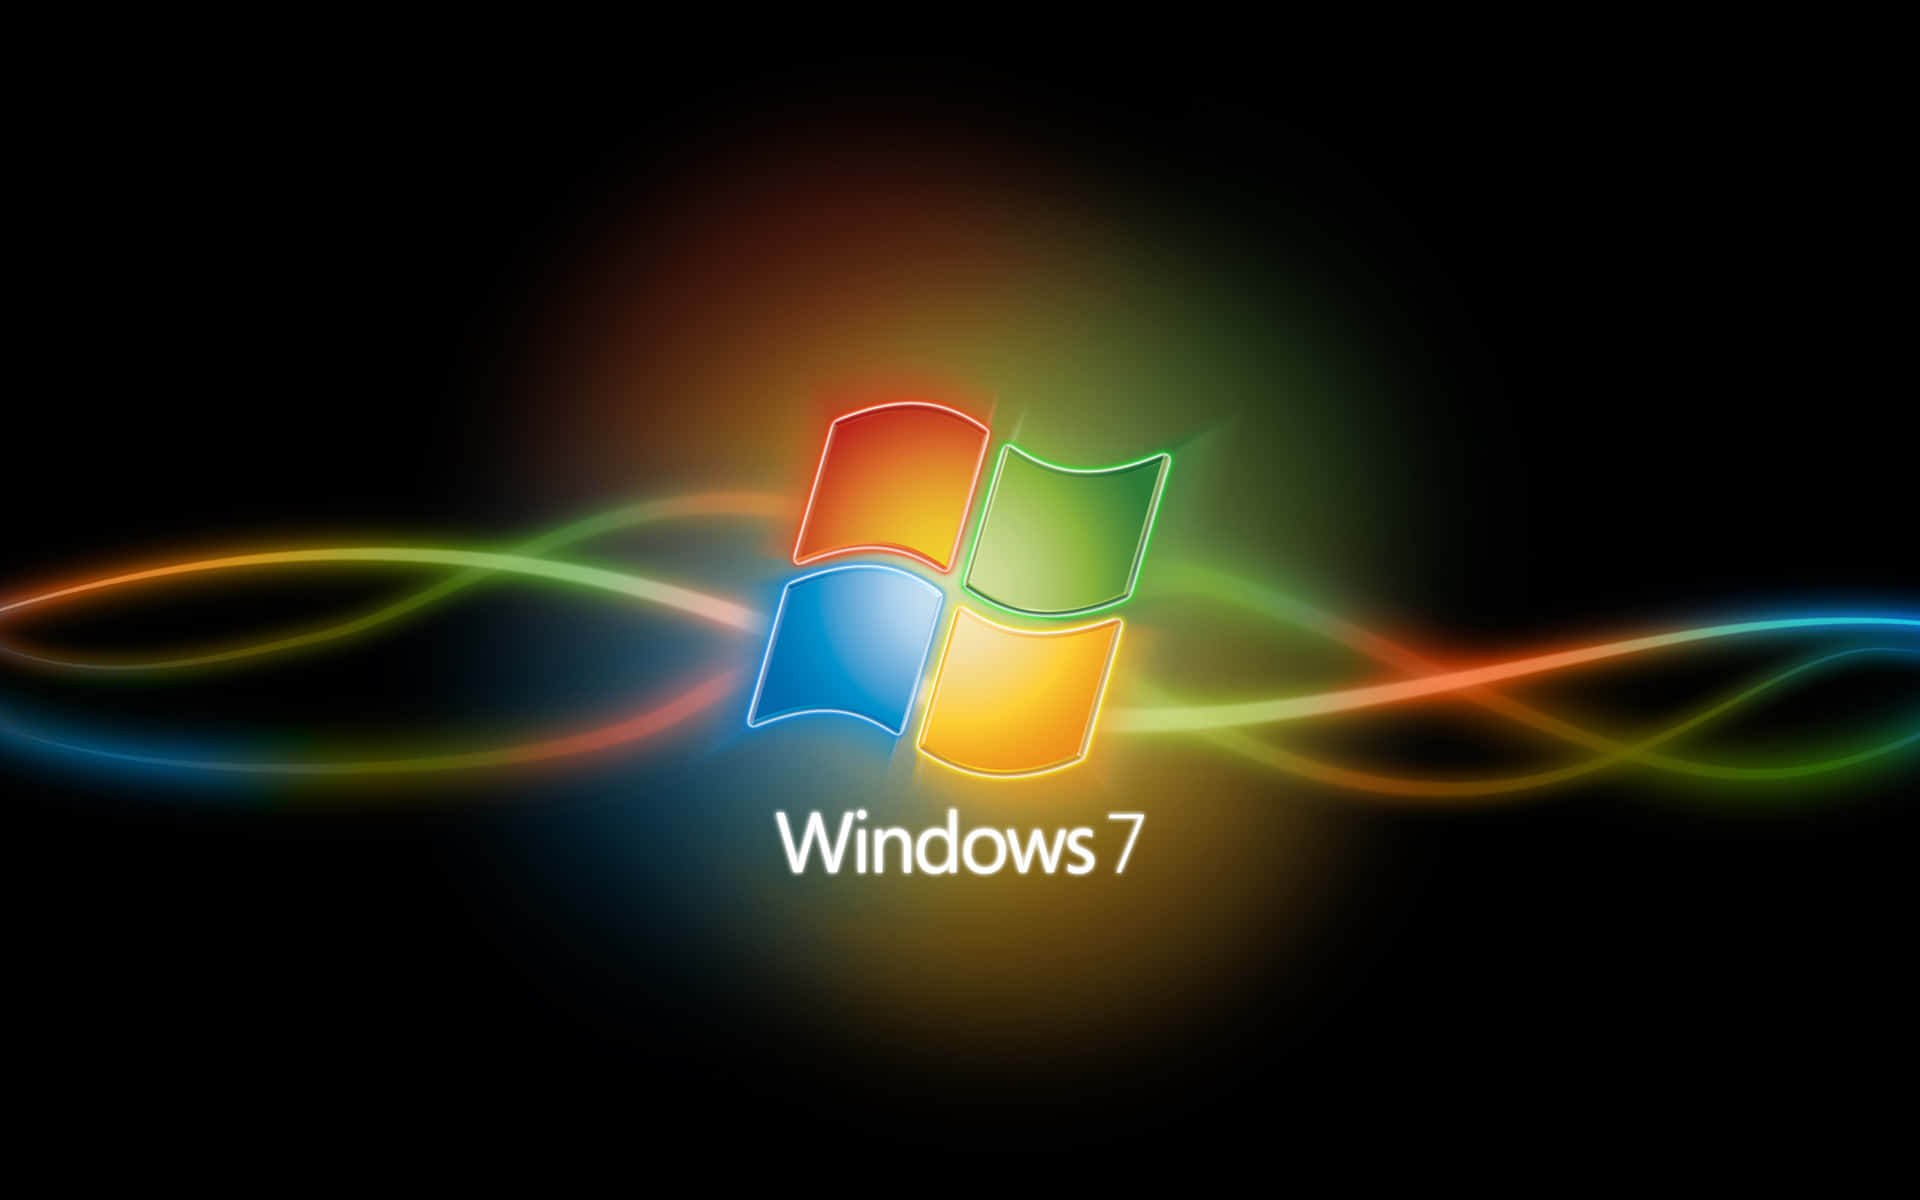 Hintergrundvon Windows 7